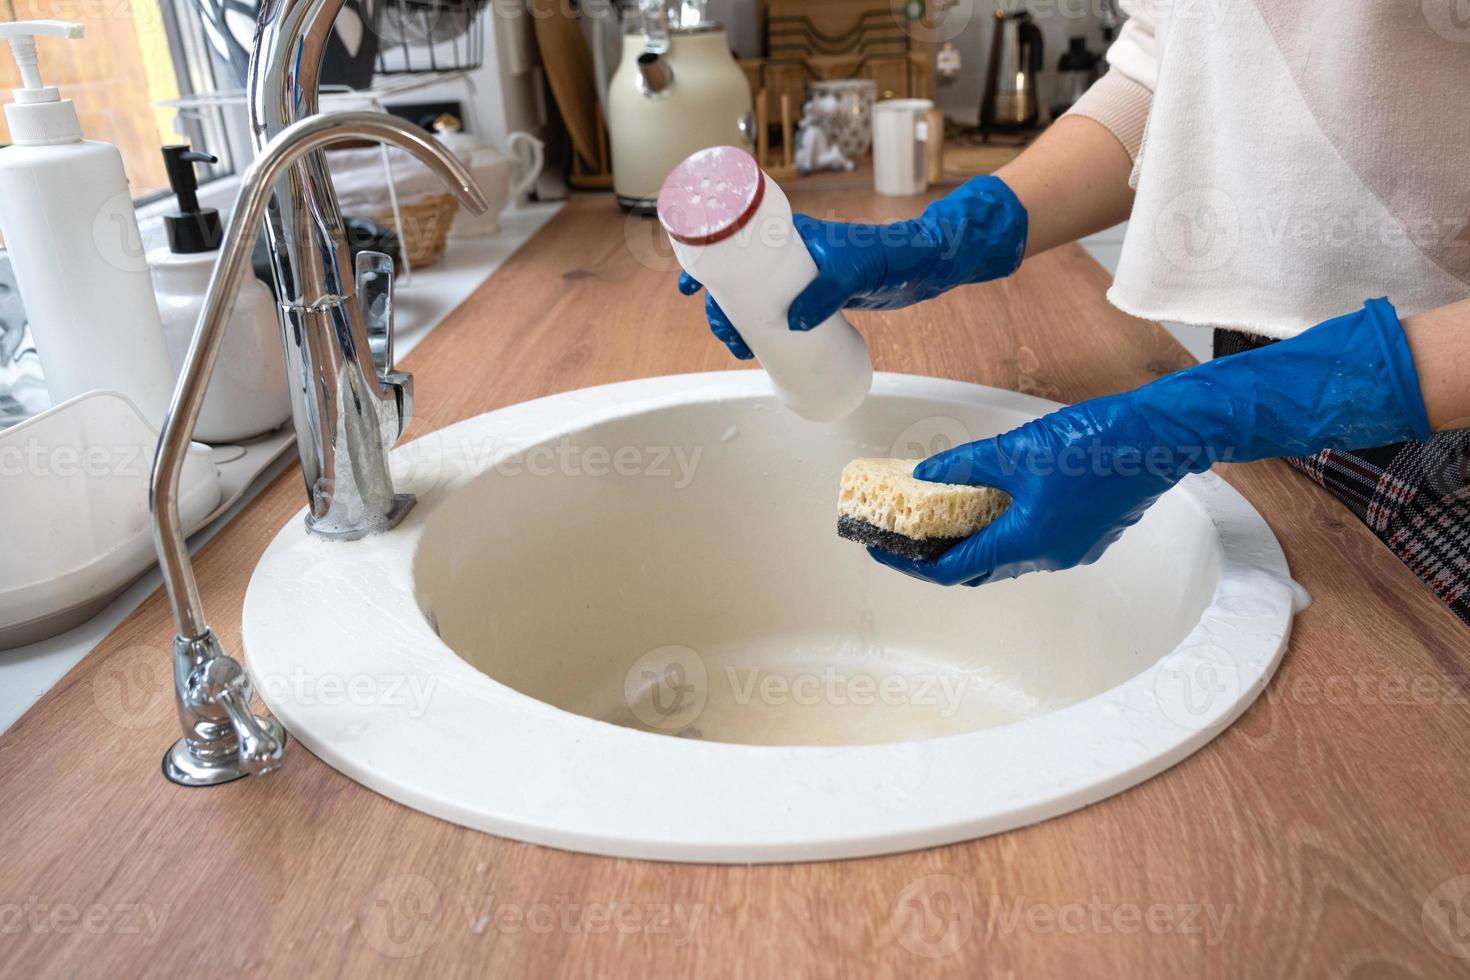 évier de nettoyage dans la cuisine, main dans les gants et éponge, détergent, poudre sèche. intérieur confortable de la maison, restauration de l'ordre, propreté, désinfection photo